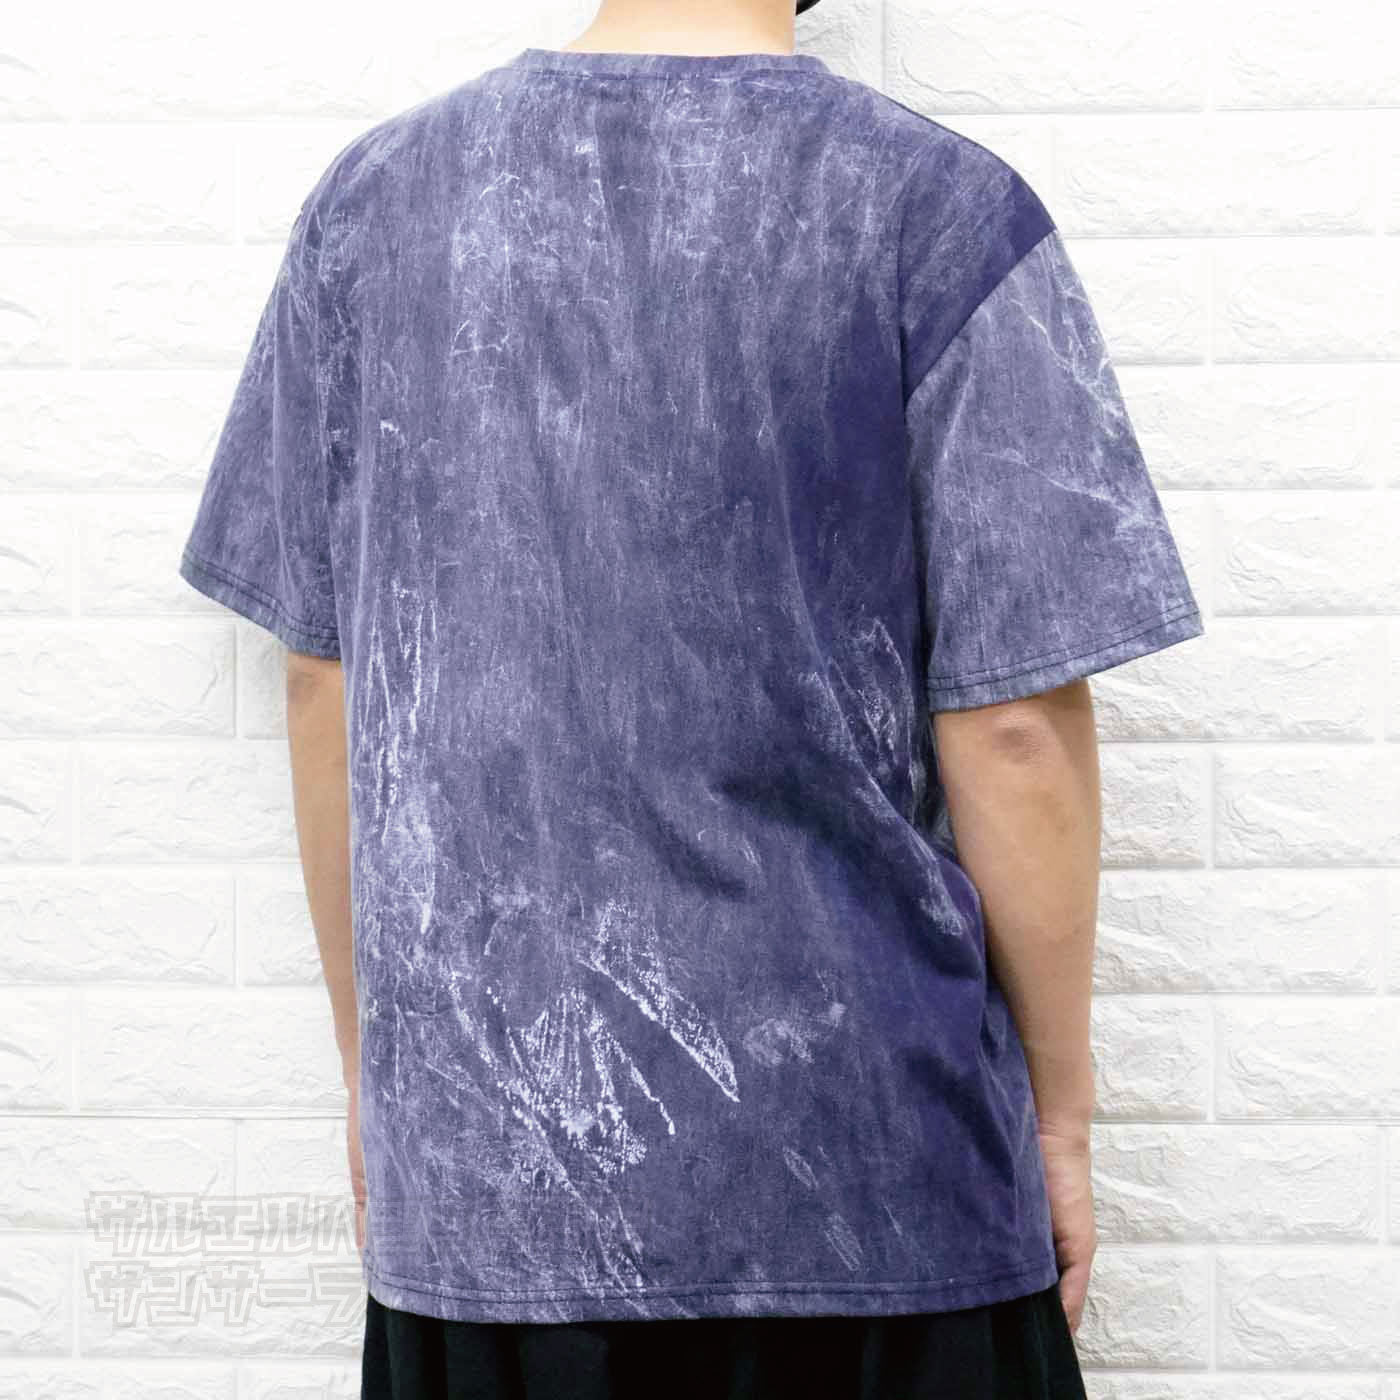 エスニック ストーンウォッシュ Tシャツ 半袖 トップス メンズ レディース ユニセックス XLサイズ 大きめサイズ ゆったり ビッグサイズ ビッグシルエット フェス アジアン